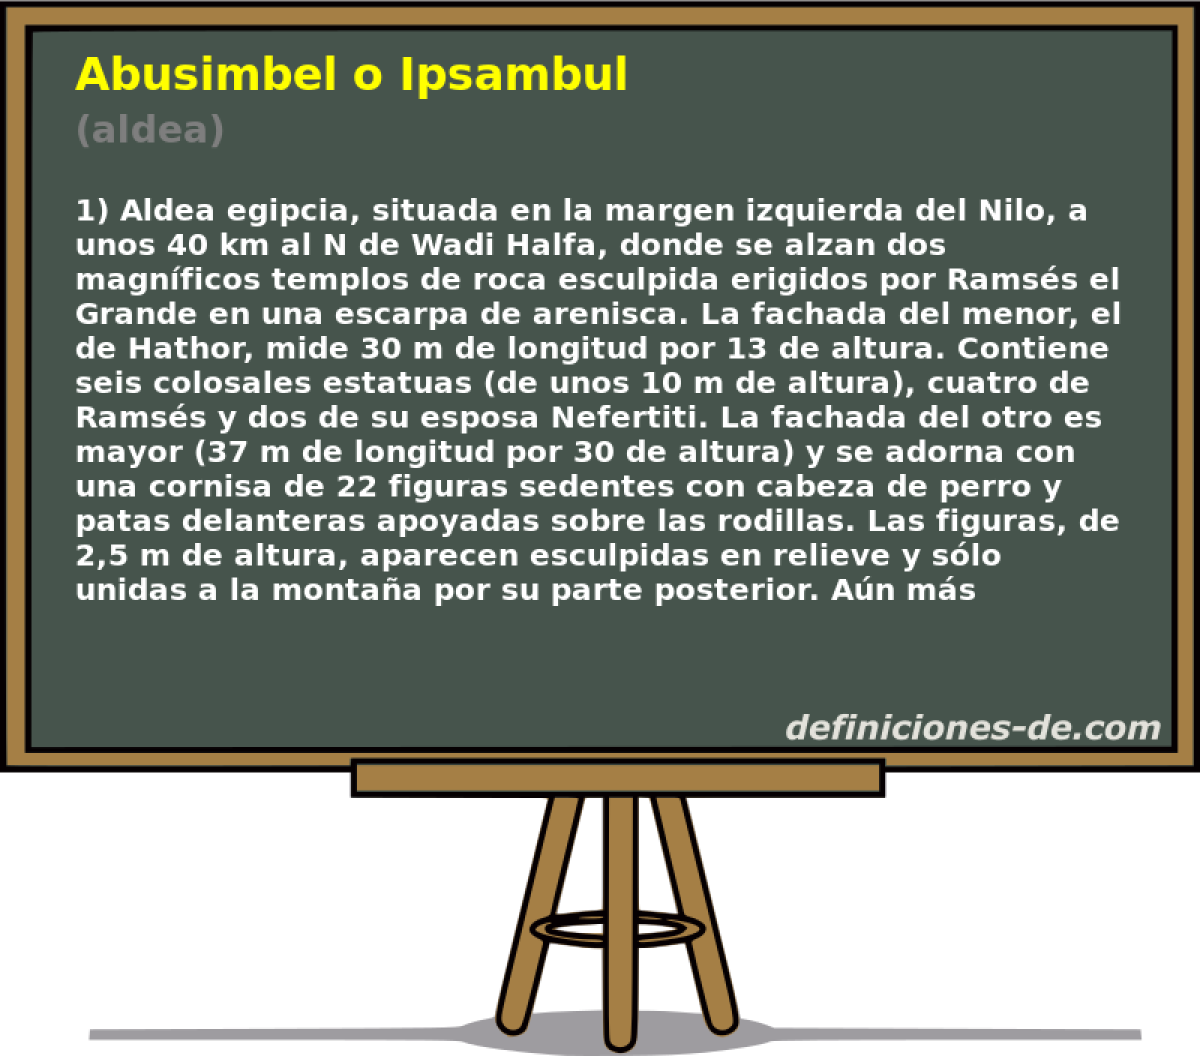 Abusimbel o Ipsambul (aldea)